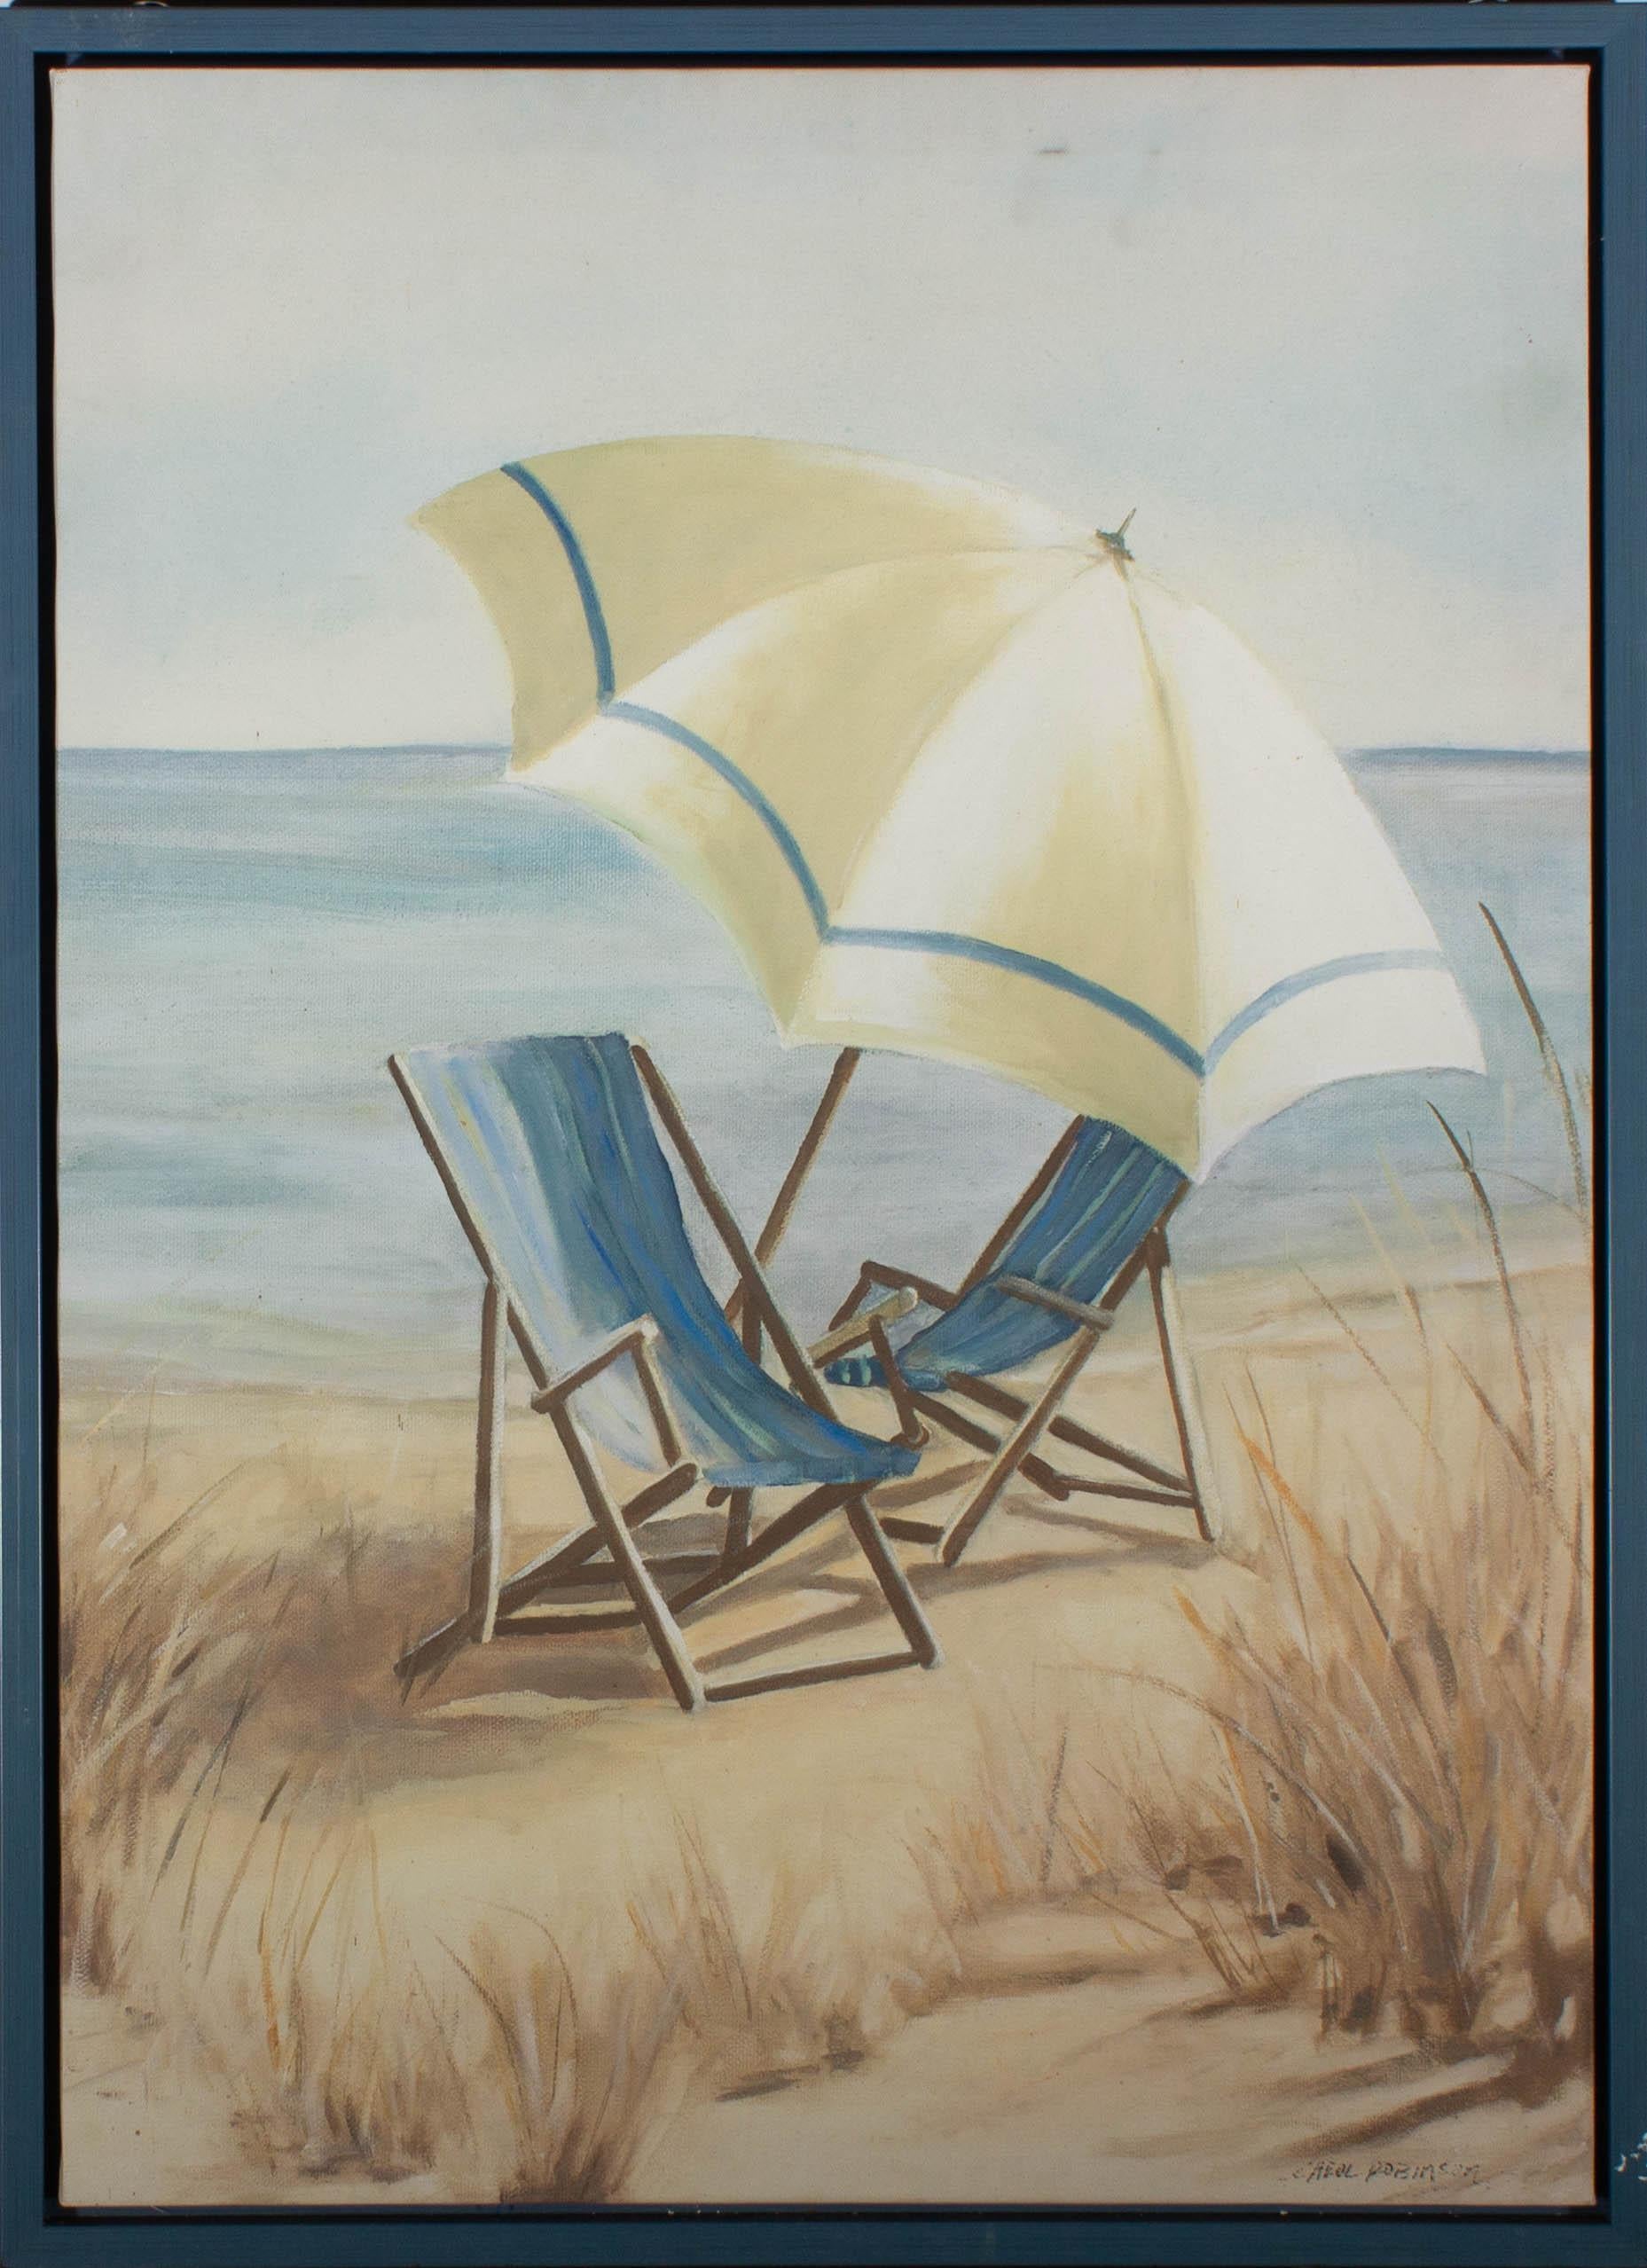 Une délicieuse scène d'été représentant deux chaises de plage et un parapluie au bord de la mer. Carol Robinson est une artiste basée aux États-Unis, spécialisée dans les peintures florales. Elle capture ses scènes dans des couleurs douces et